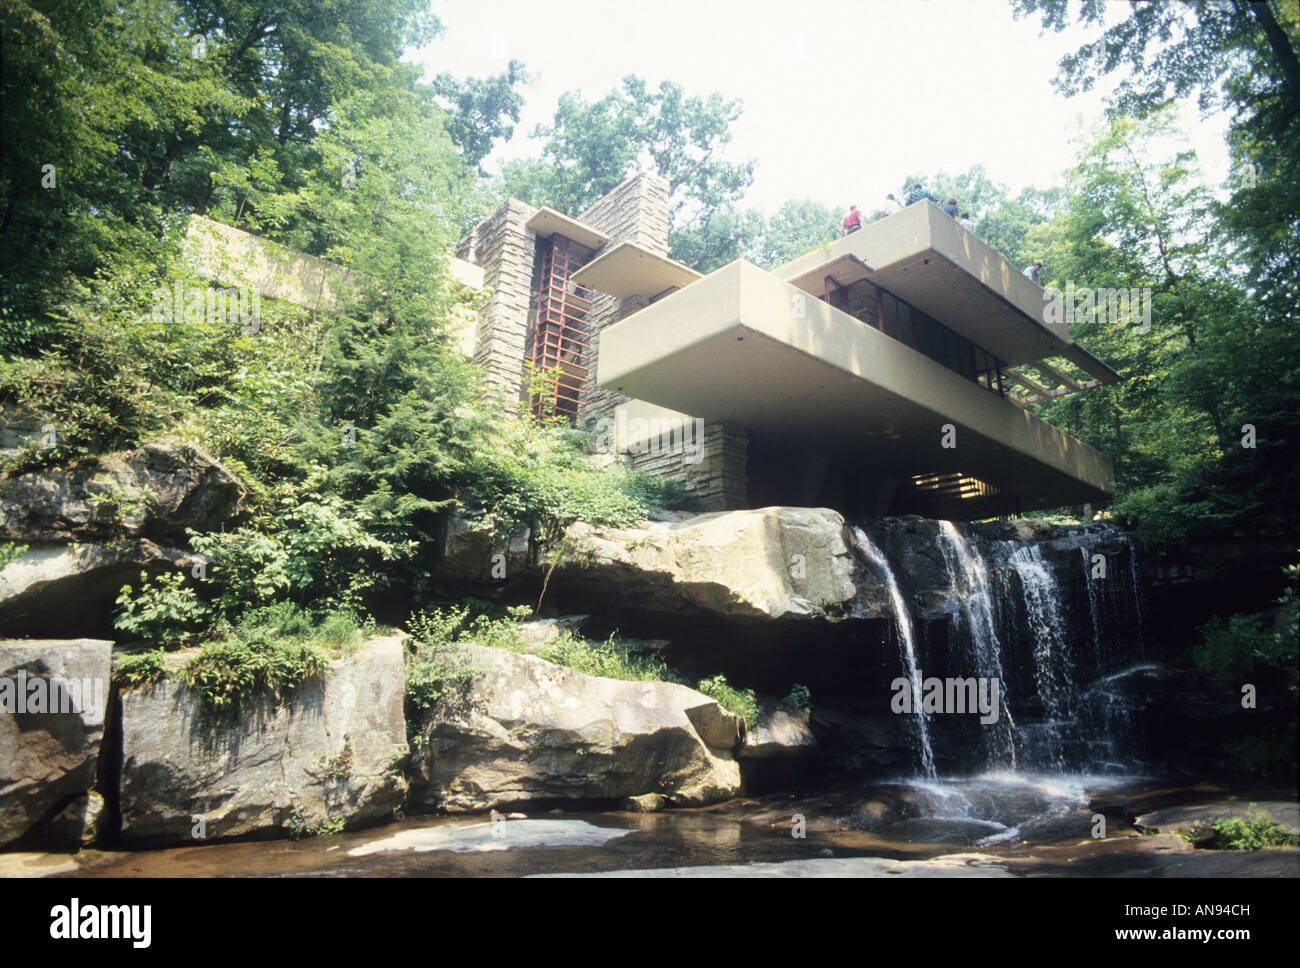 Caduta di acqua, casa progettata da Frank Lloyd Wright, Pennsylvania USA turisti visitano casa pietra miliare dell'architettura Foto Stock